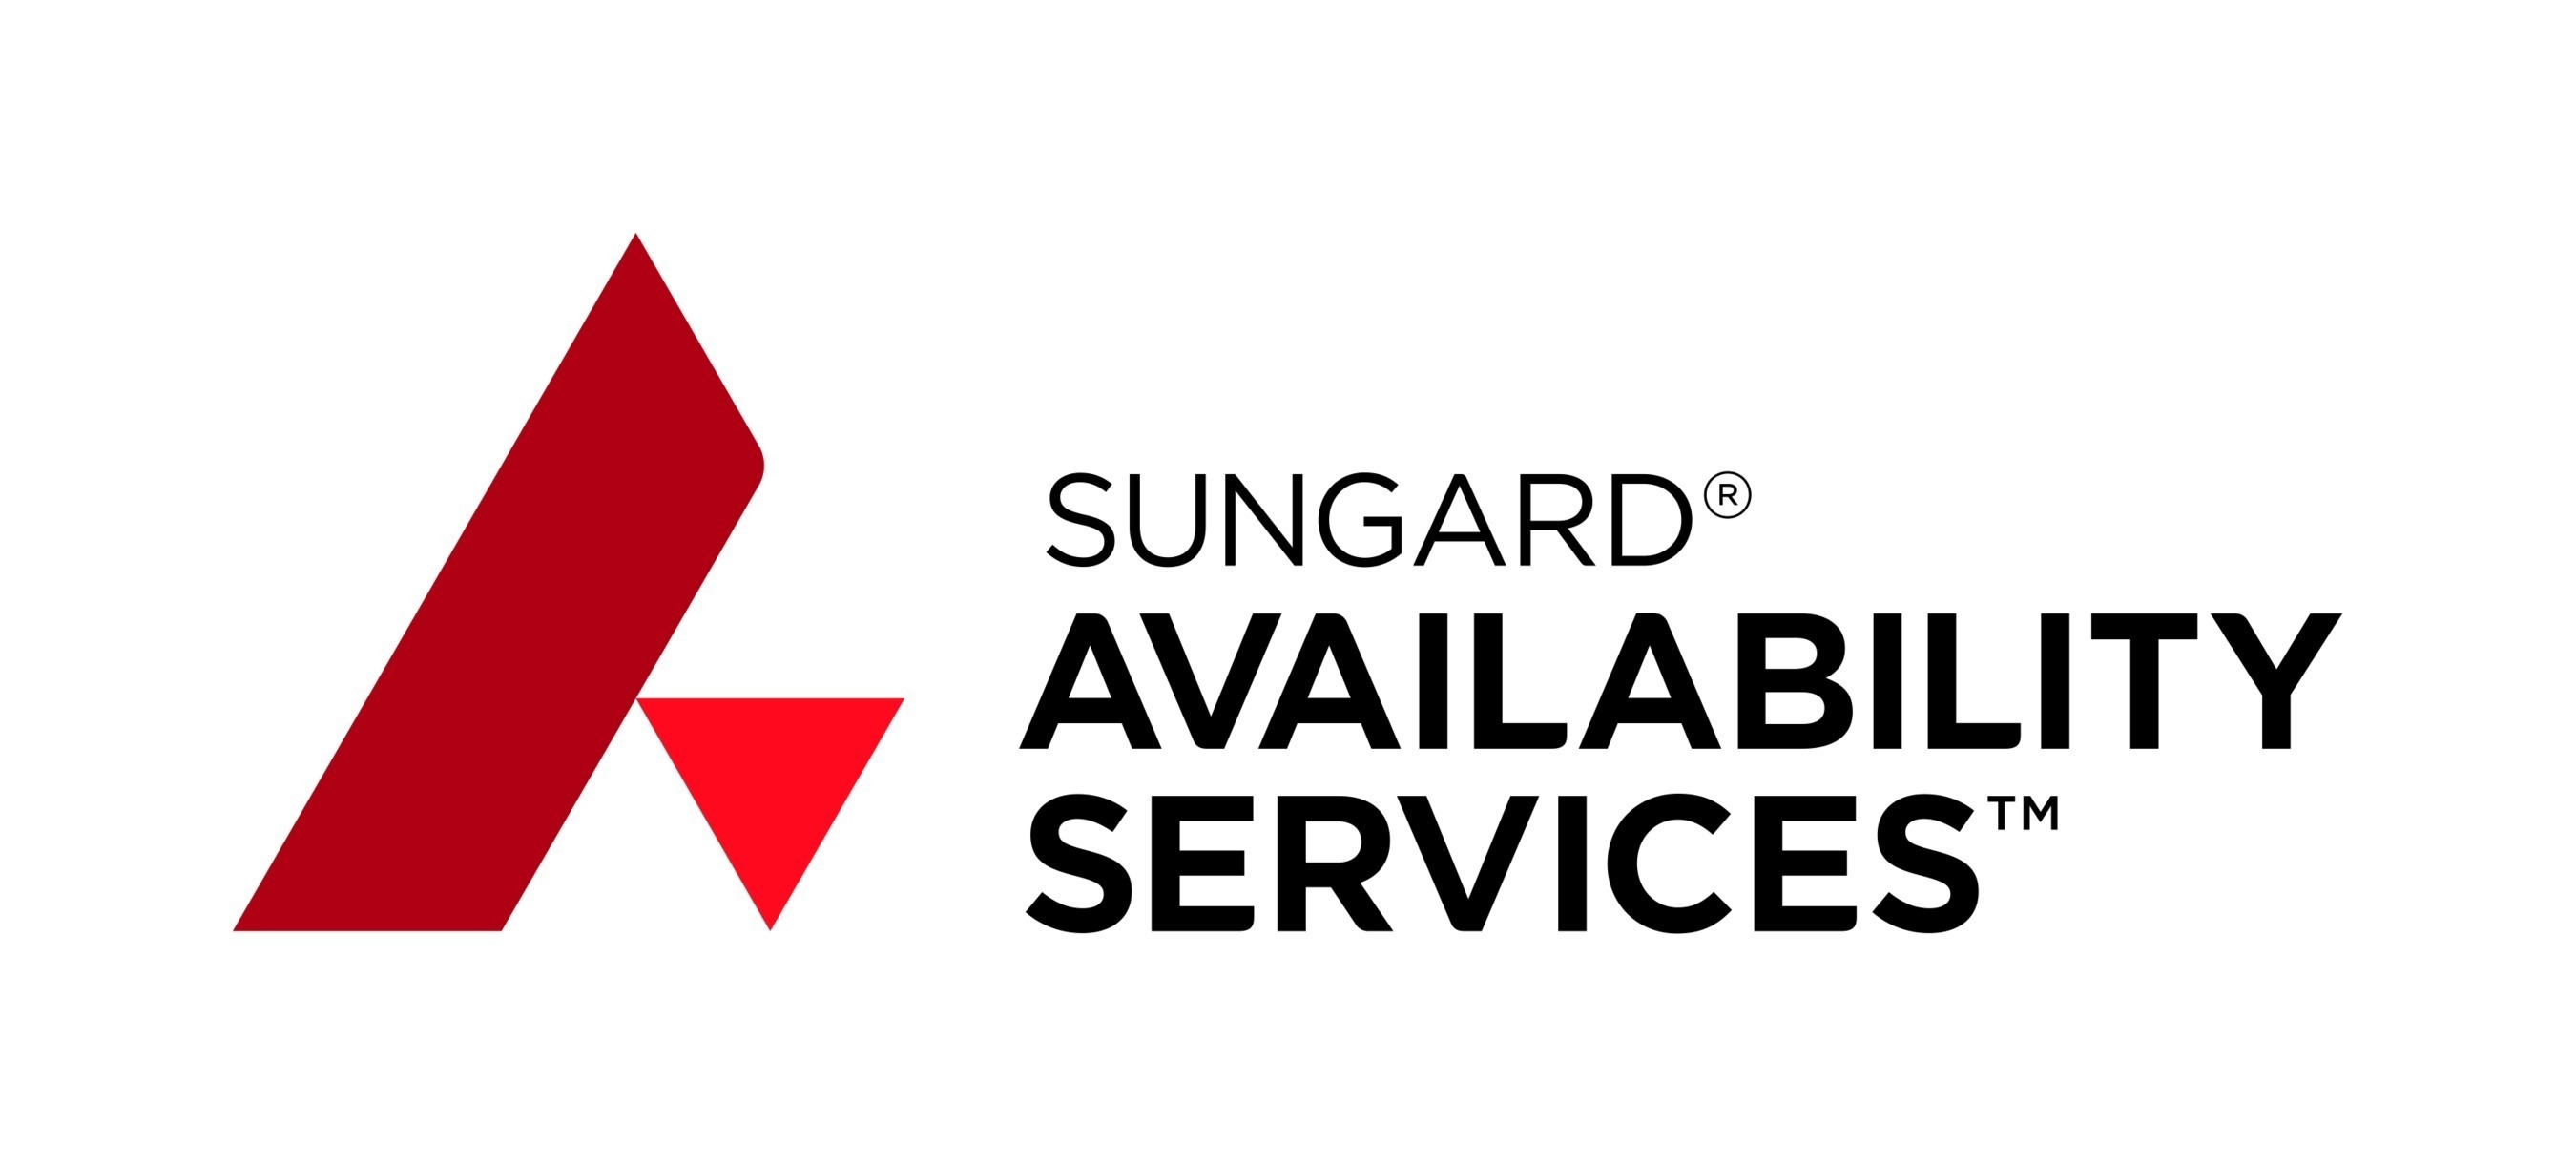 Sungard Availability Services logo.